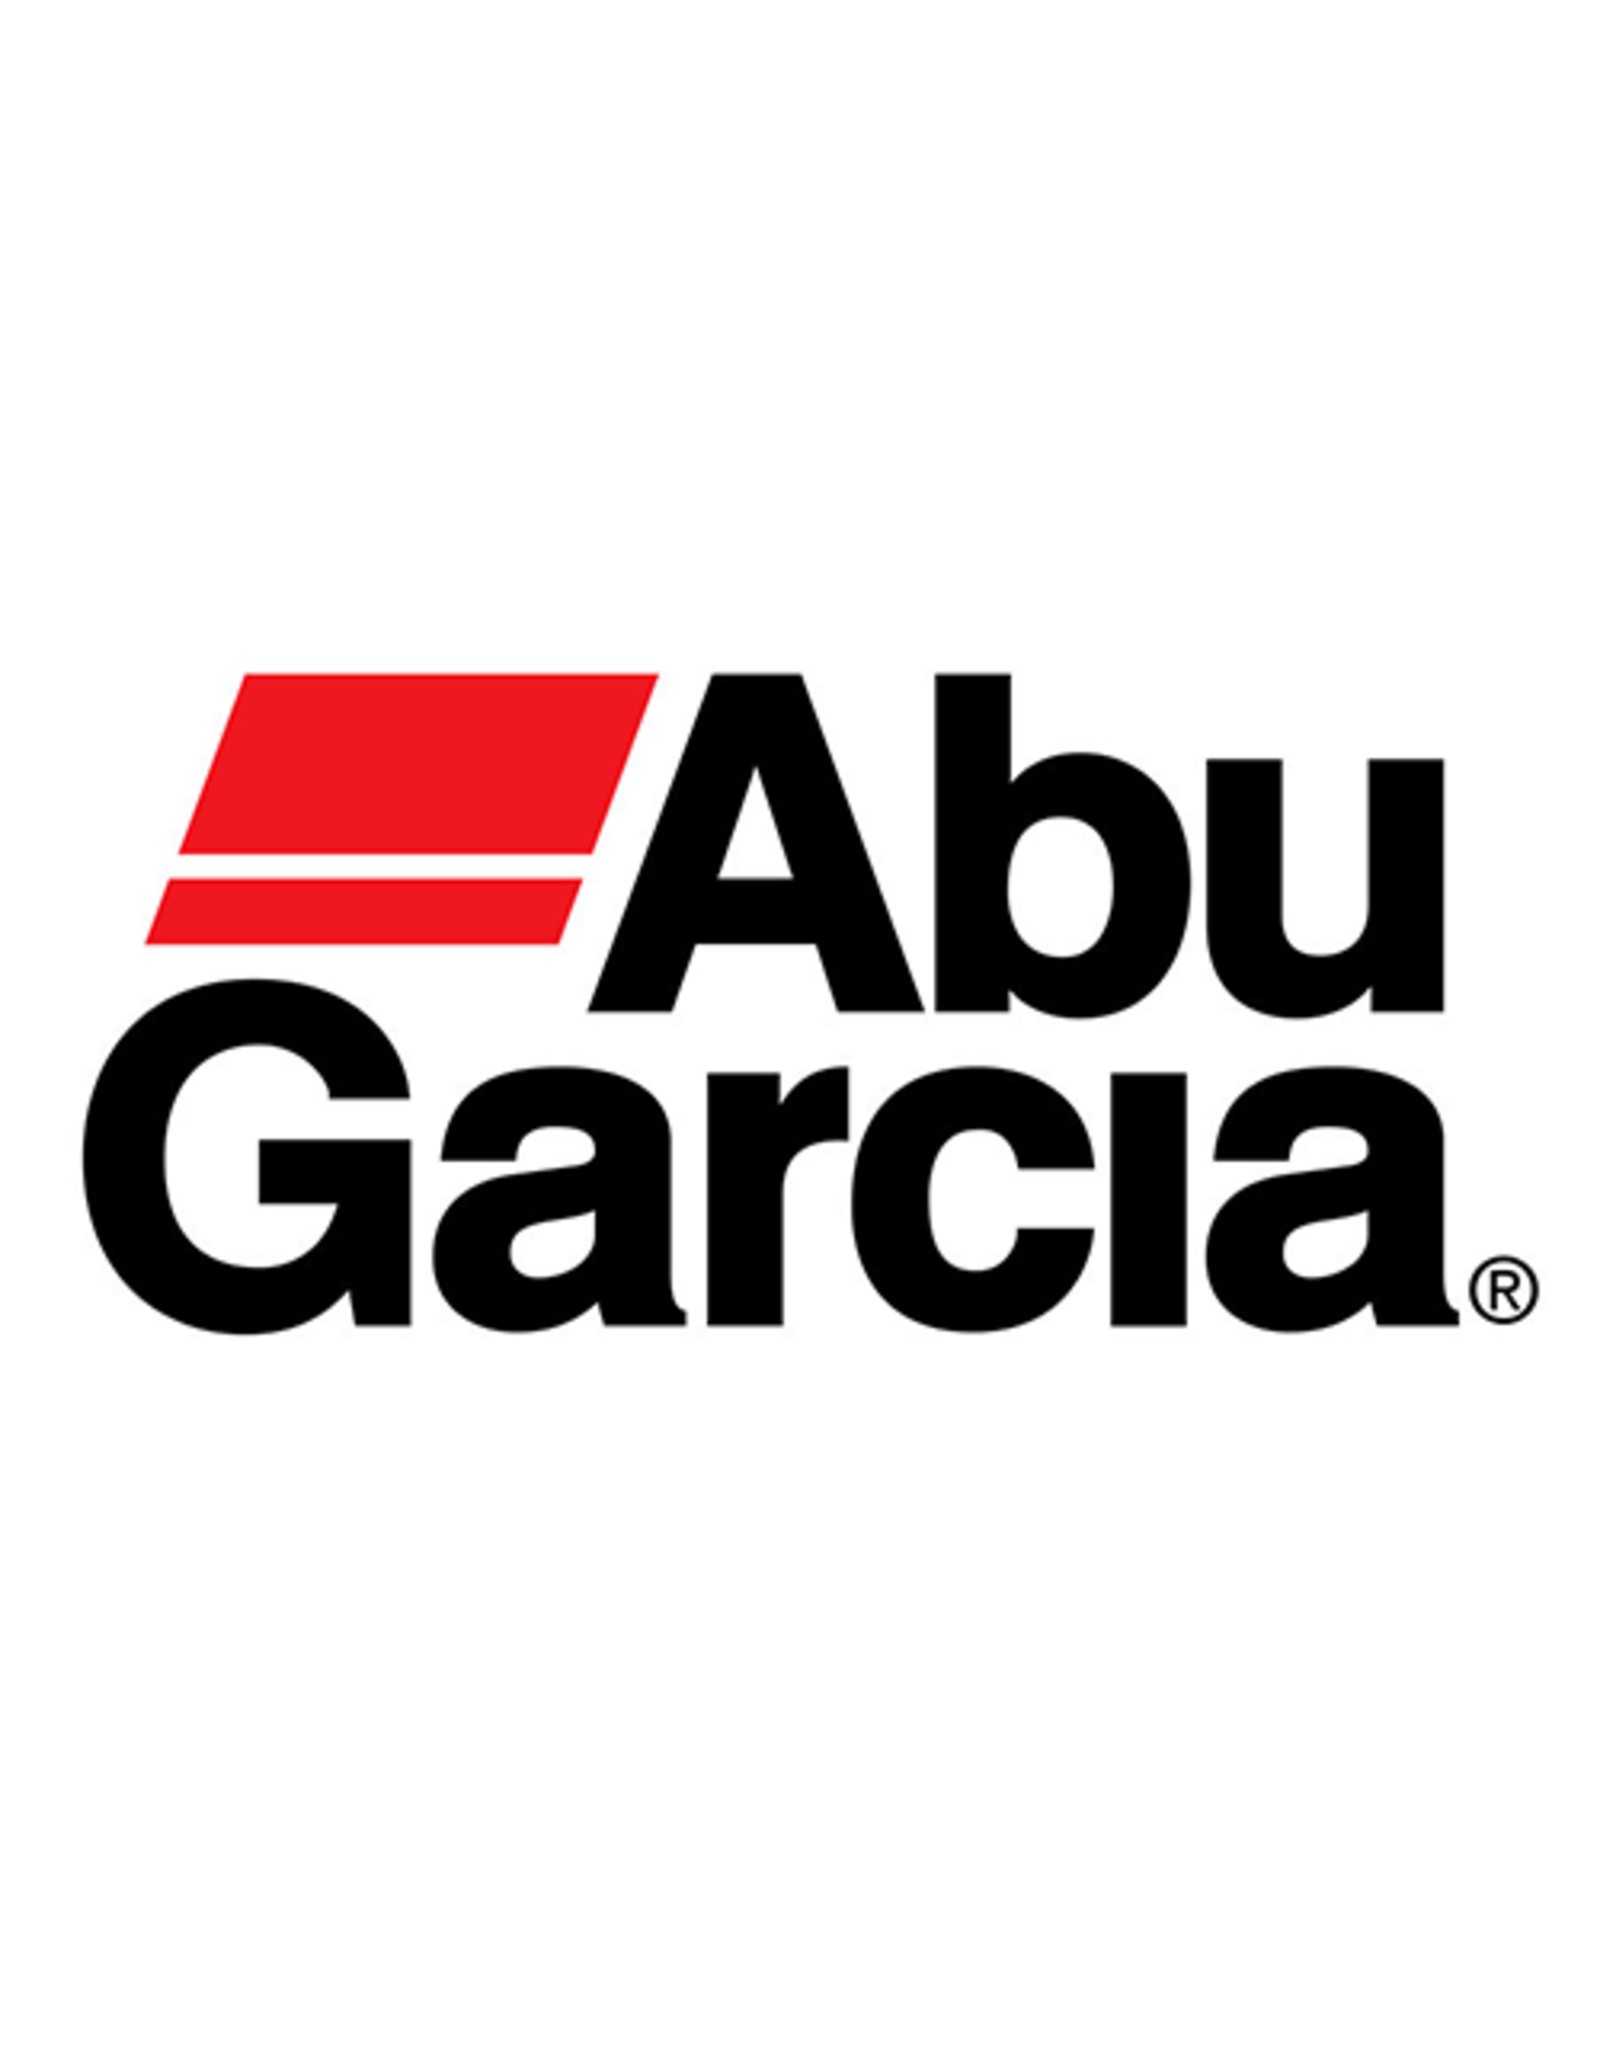 Abu Garcia 1279789  HANDLE SCREW